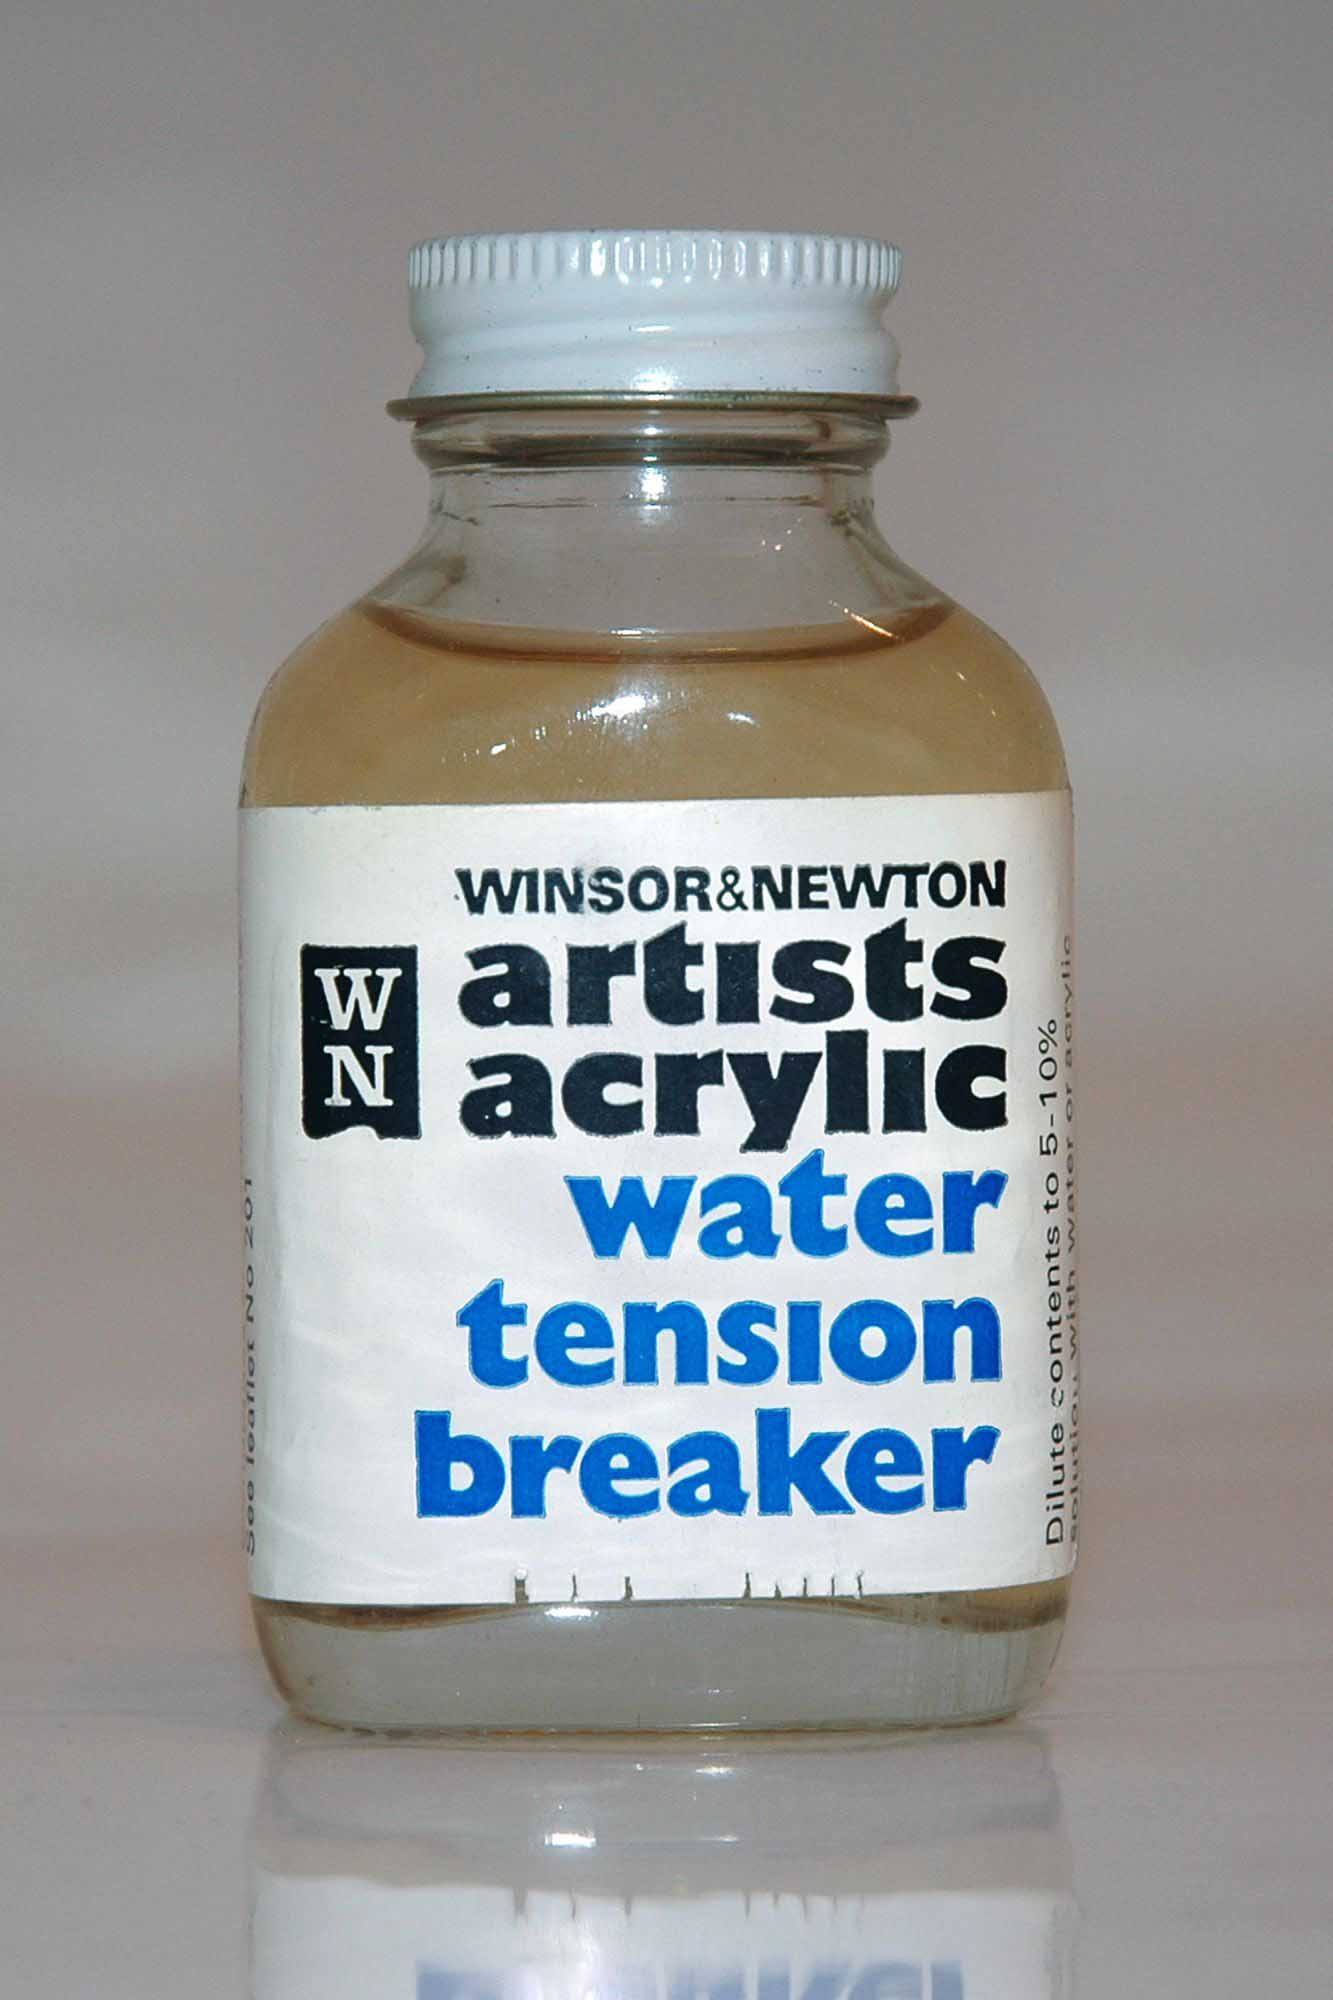 A bottle of Winsor & Newton Acrylic Water Tension Breaker